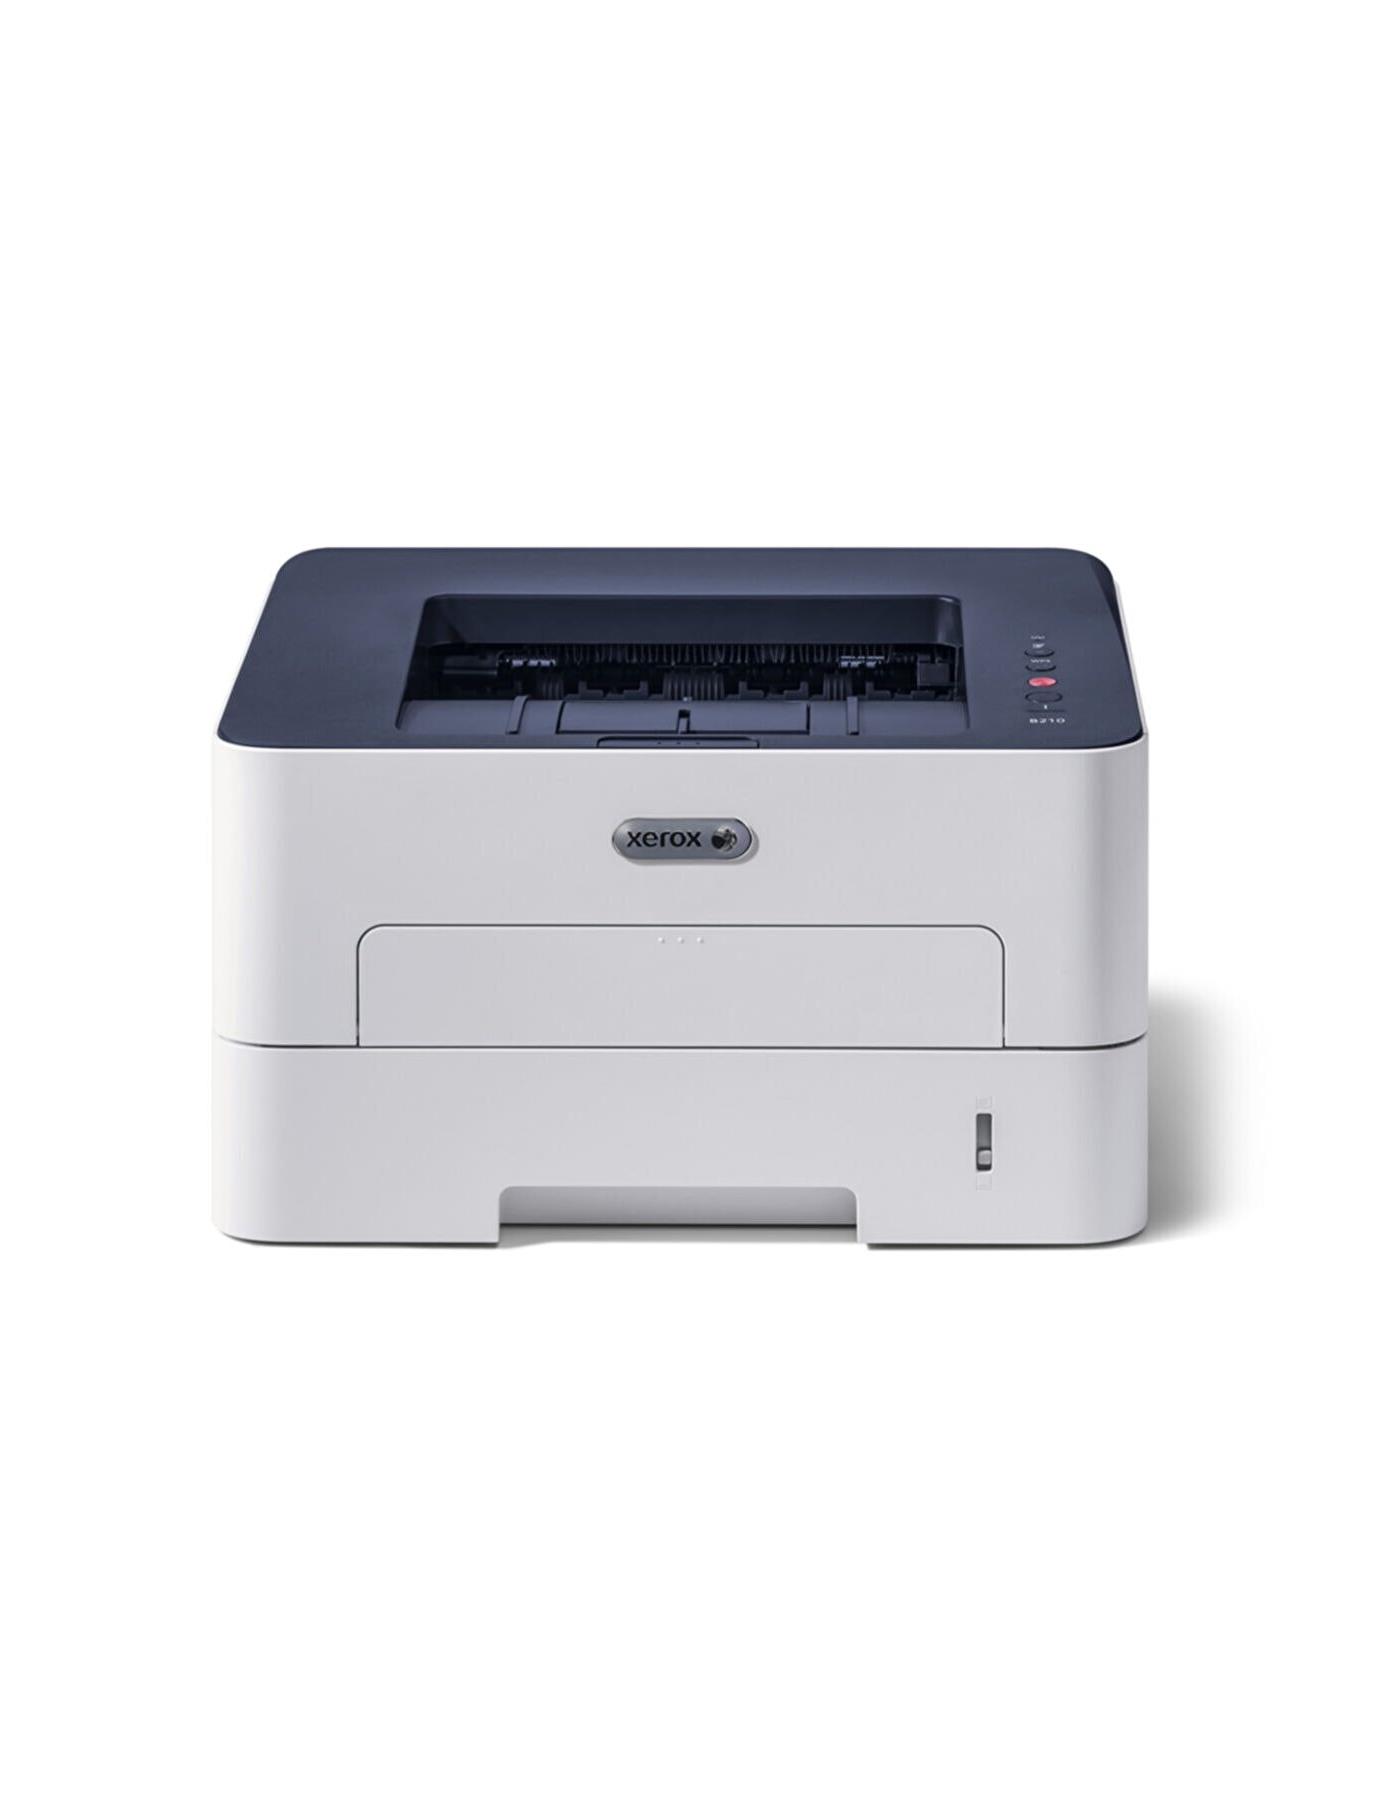 Принтер лазерный Xerox Phaser 3260dni. Лазерный принтер Xerox Phaser 3052ni. Xerox Phaser 3020. Принтер Xerox b210dni. Купить принтер xerox phaser 3020